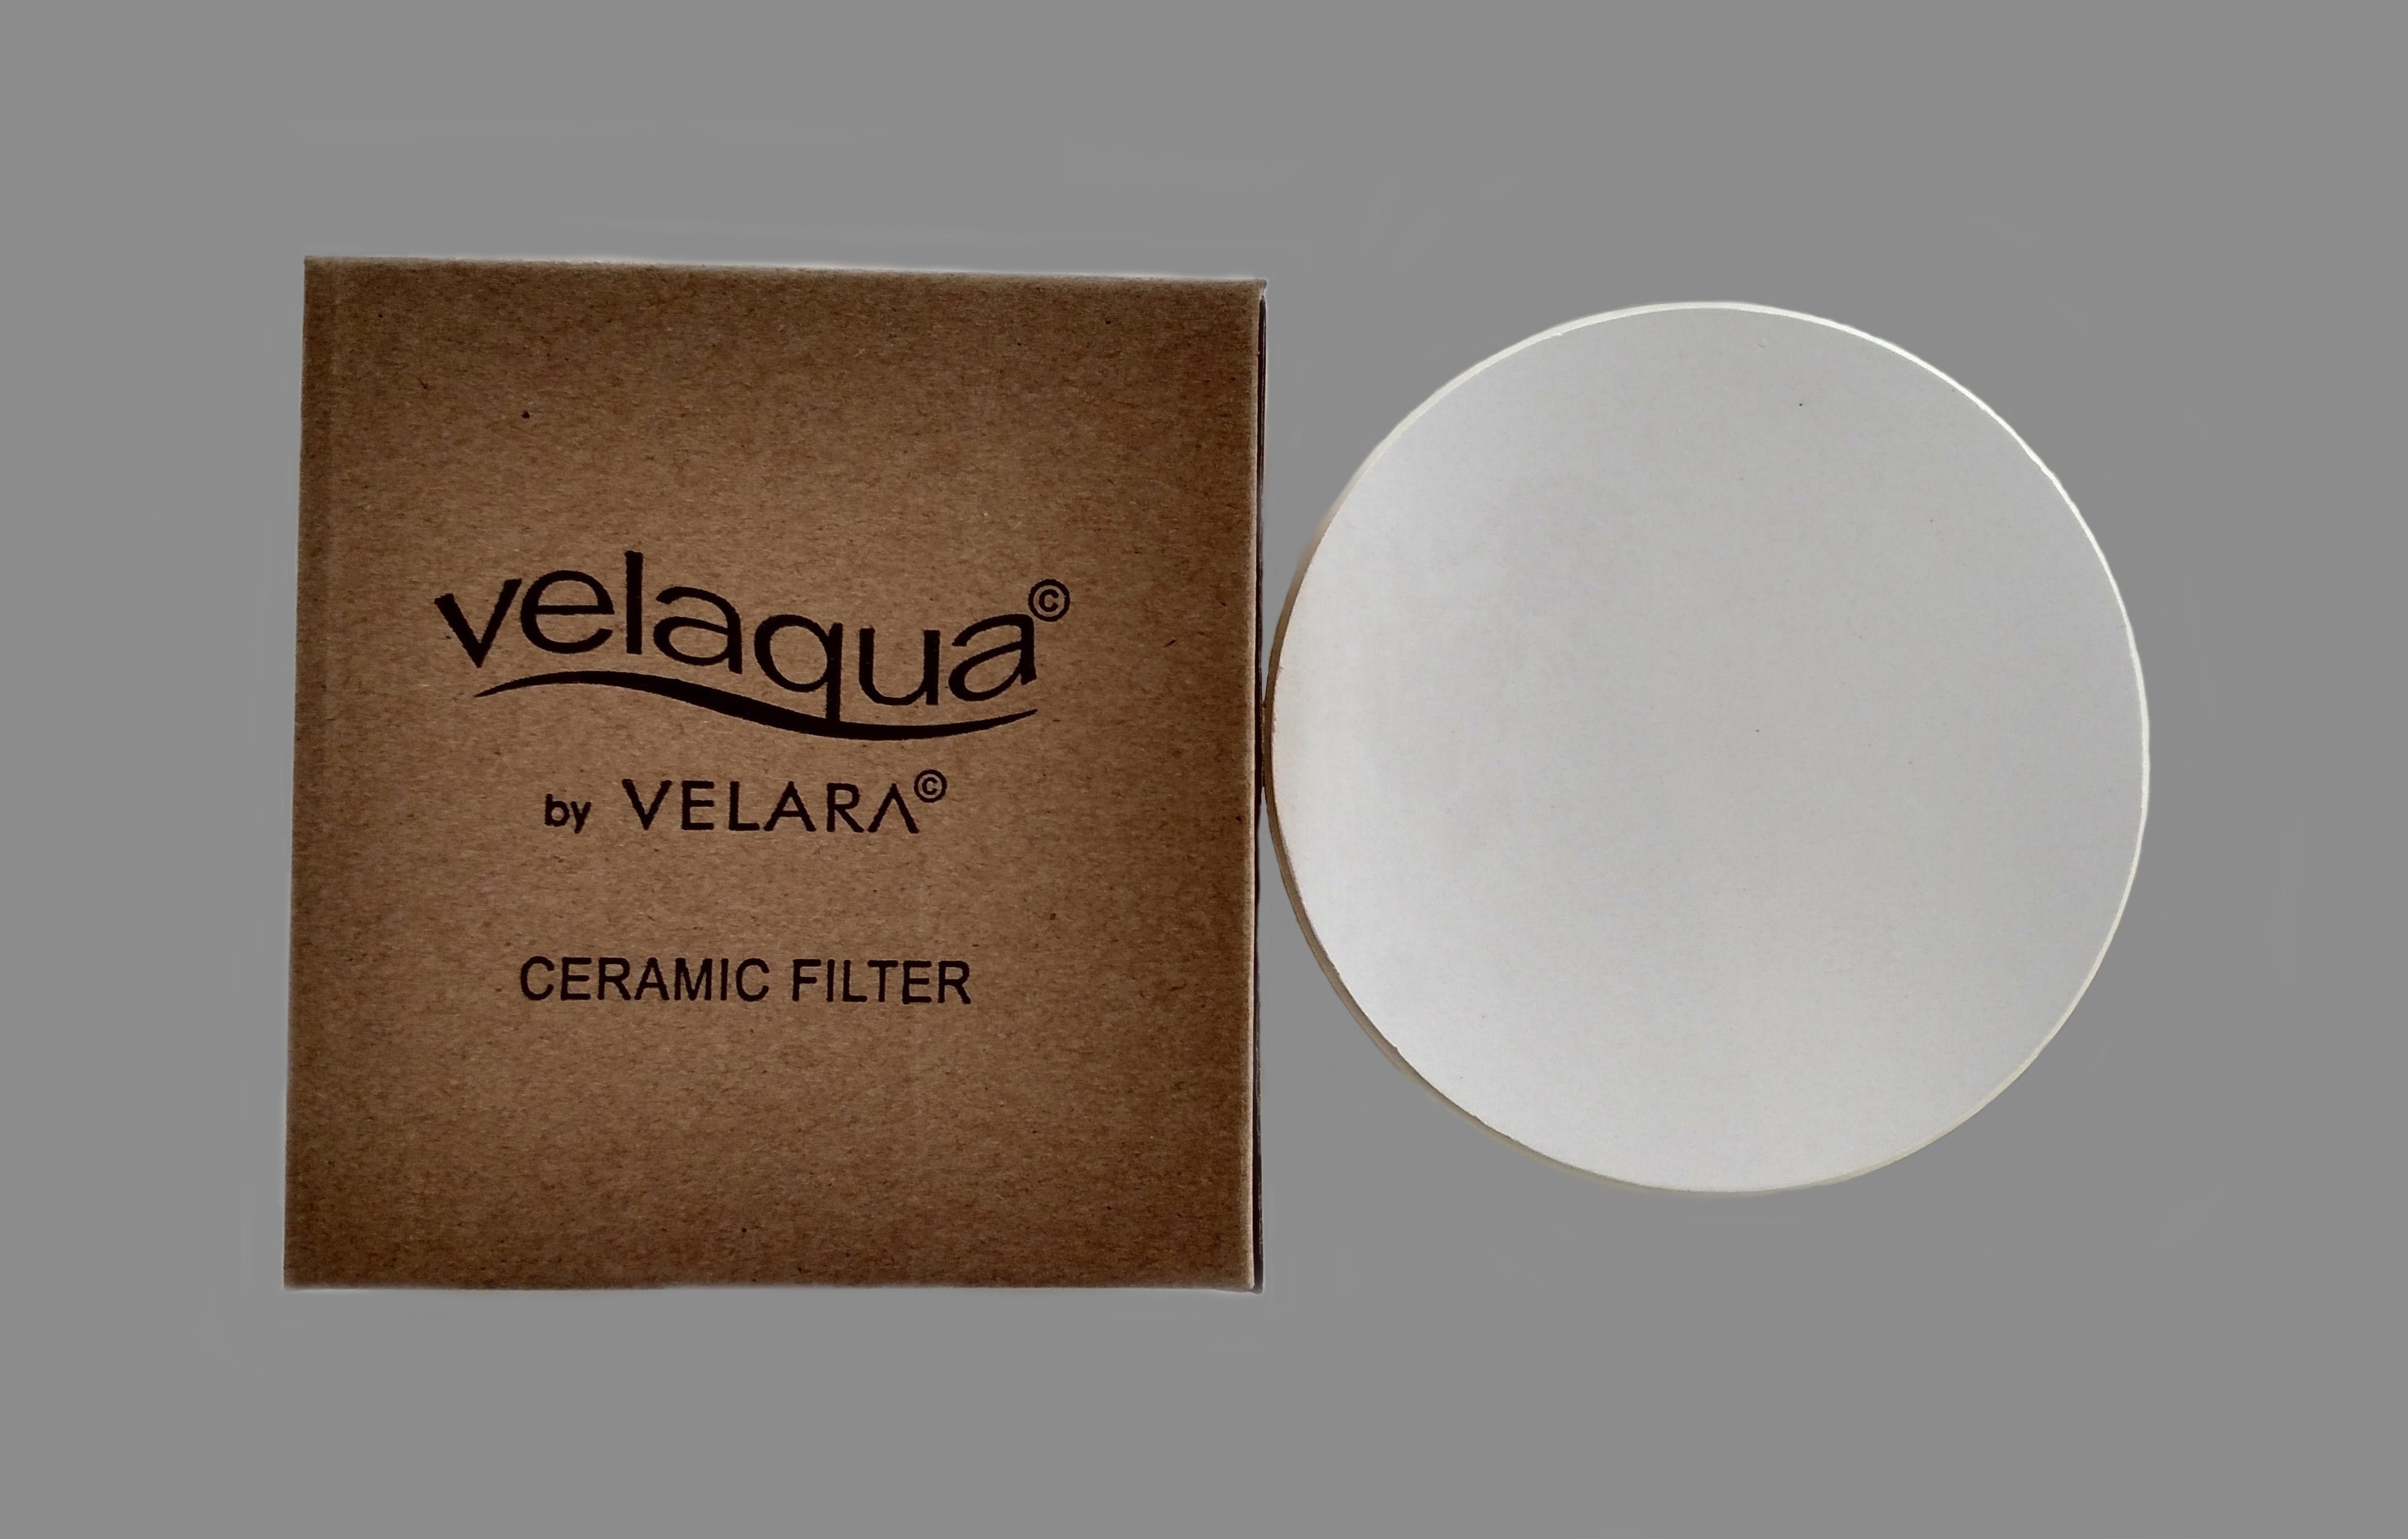 Velaqua Alkaline Water Replacement Cartridge Filter